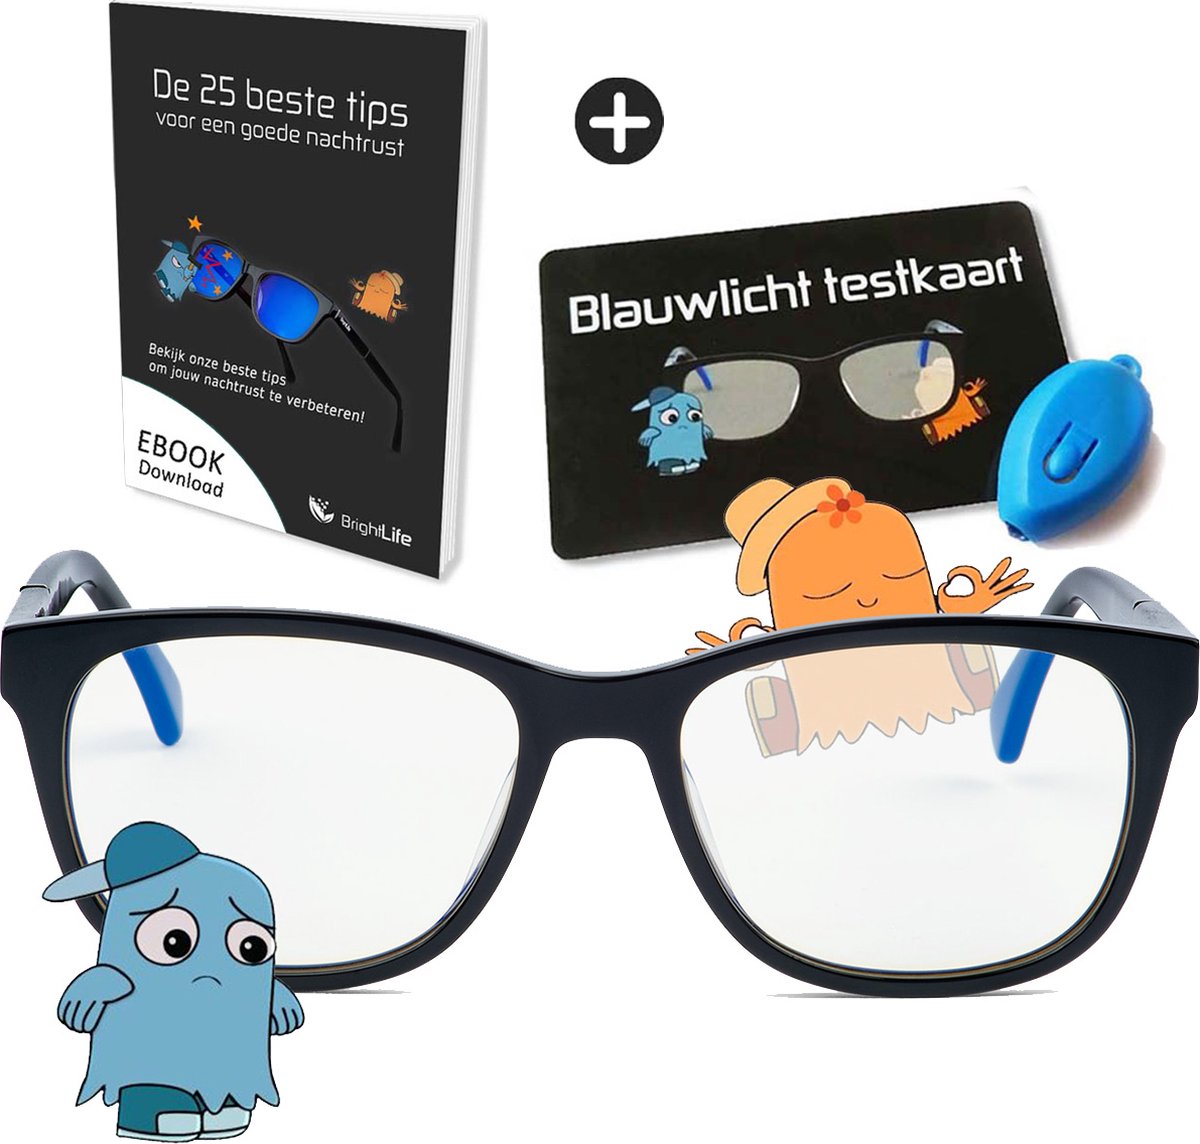 BrightLife Focus® Blauw licht bril - Computerbril - Blauw licht filter bril - Beeldschermbril - Blue light glasses - Compleet pakket - Beste keus voor overdag